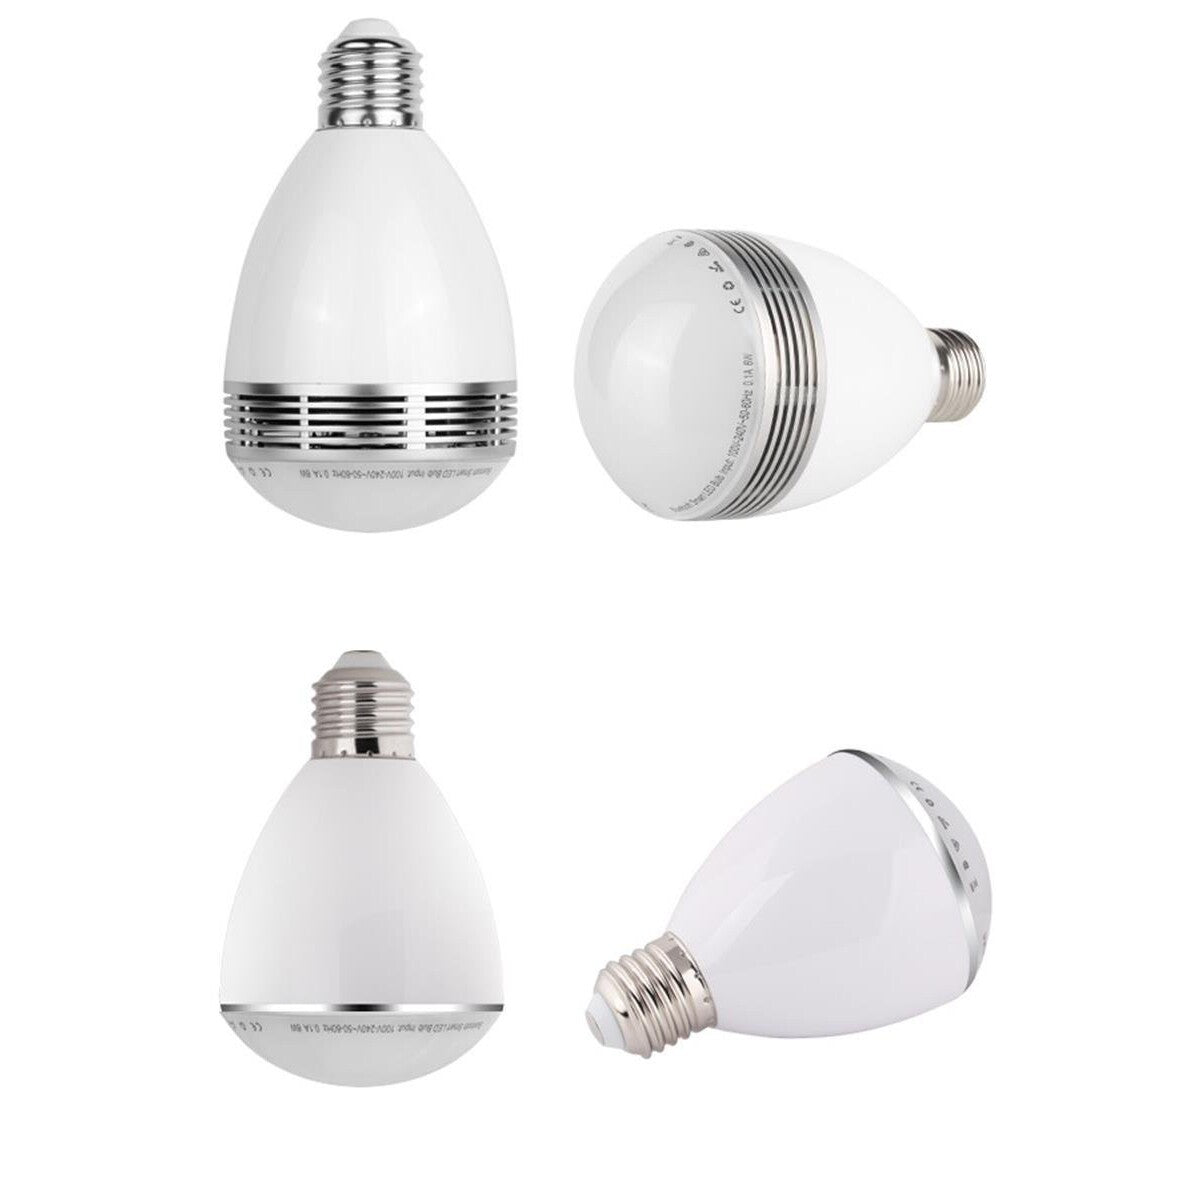 SMART Bluetooth žiarovka X-SITE BL-06G + 2 farebné LED žiarovky